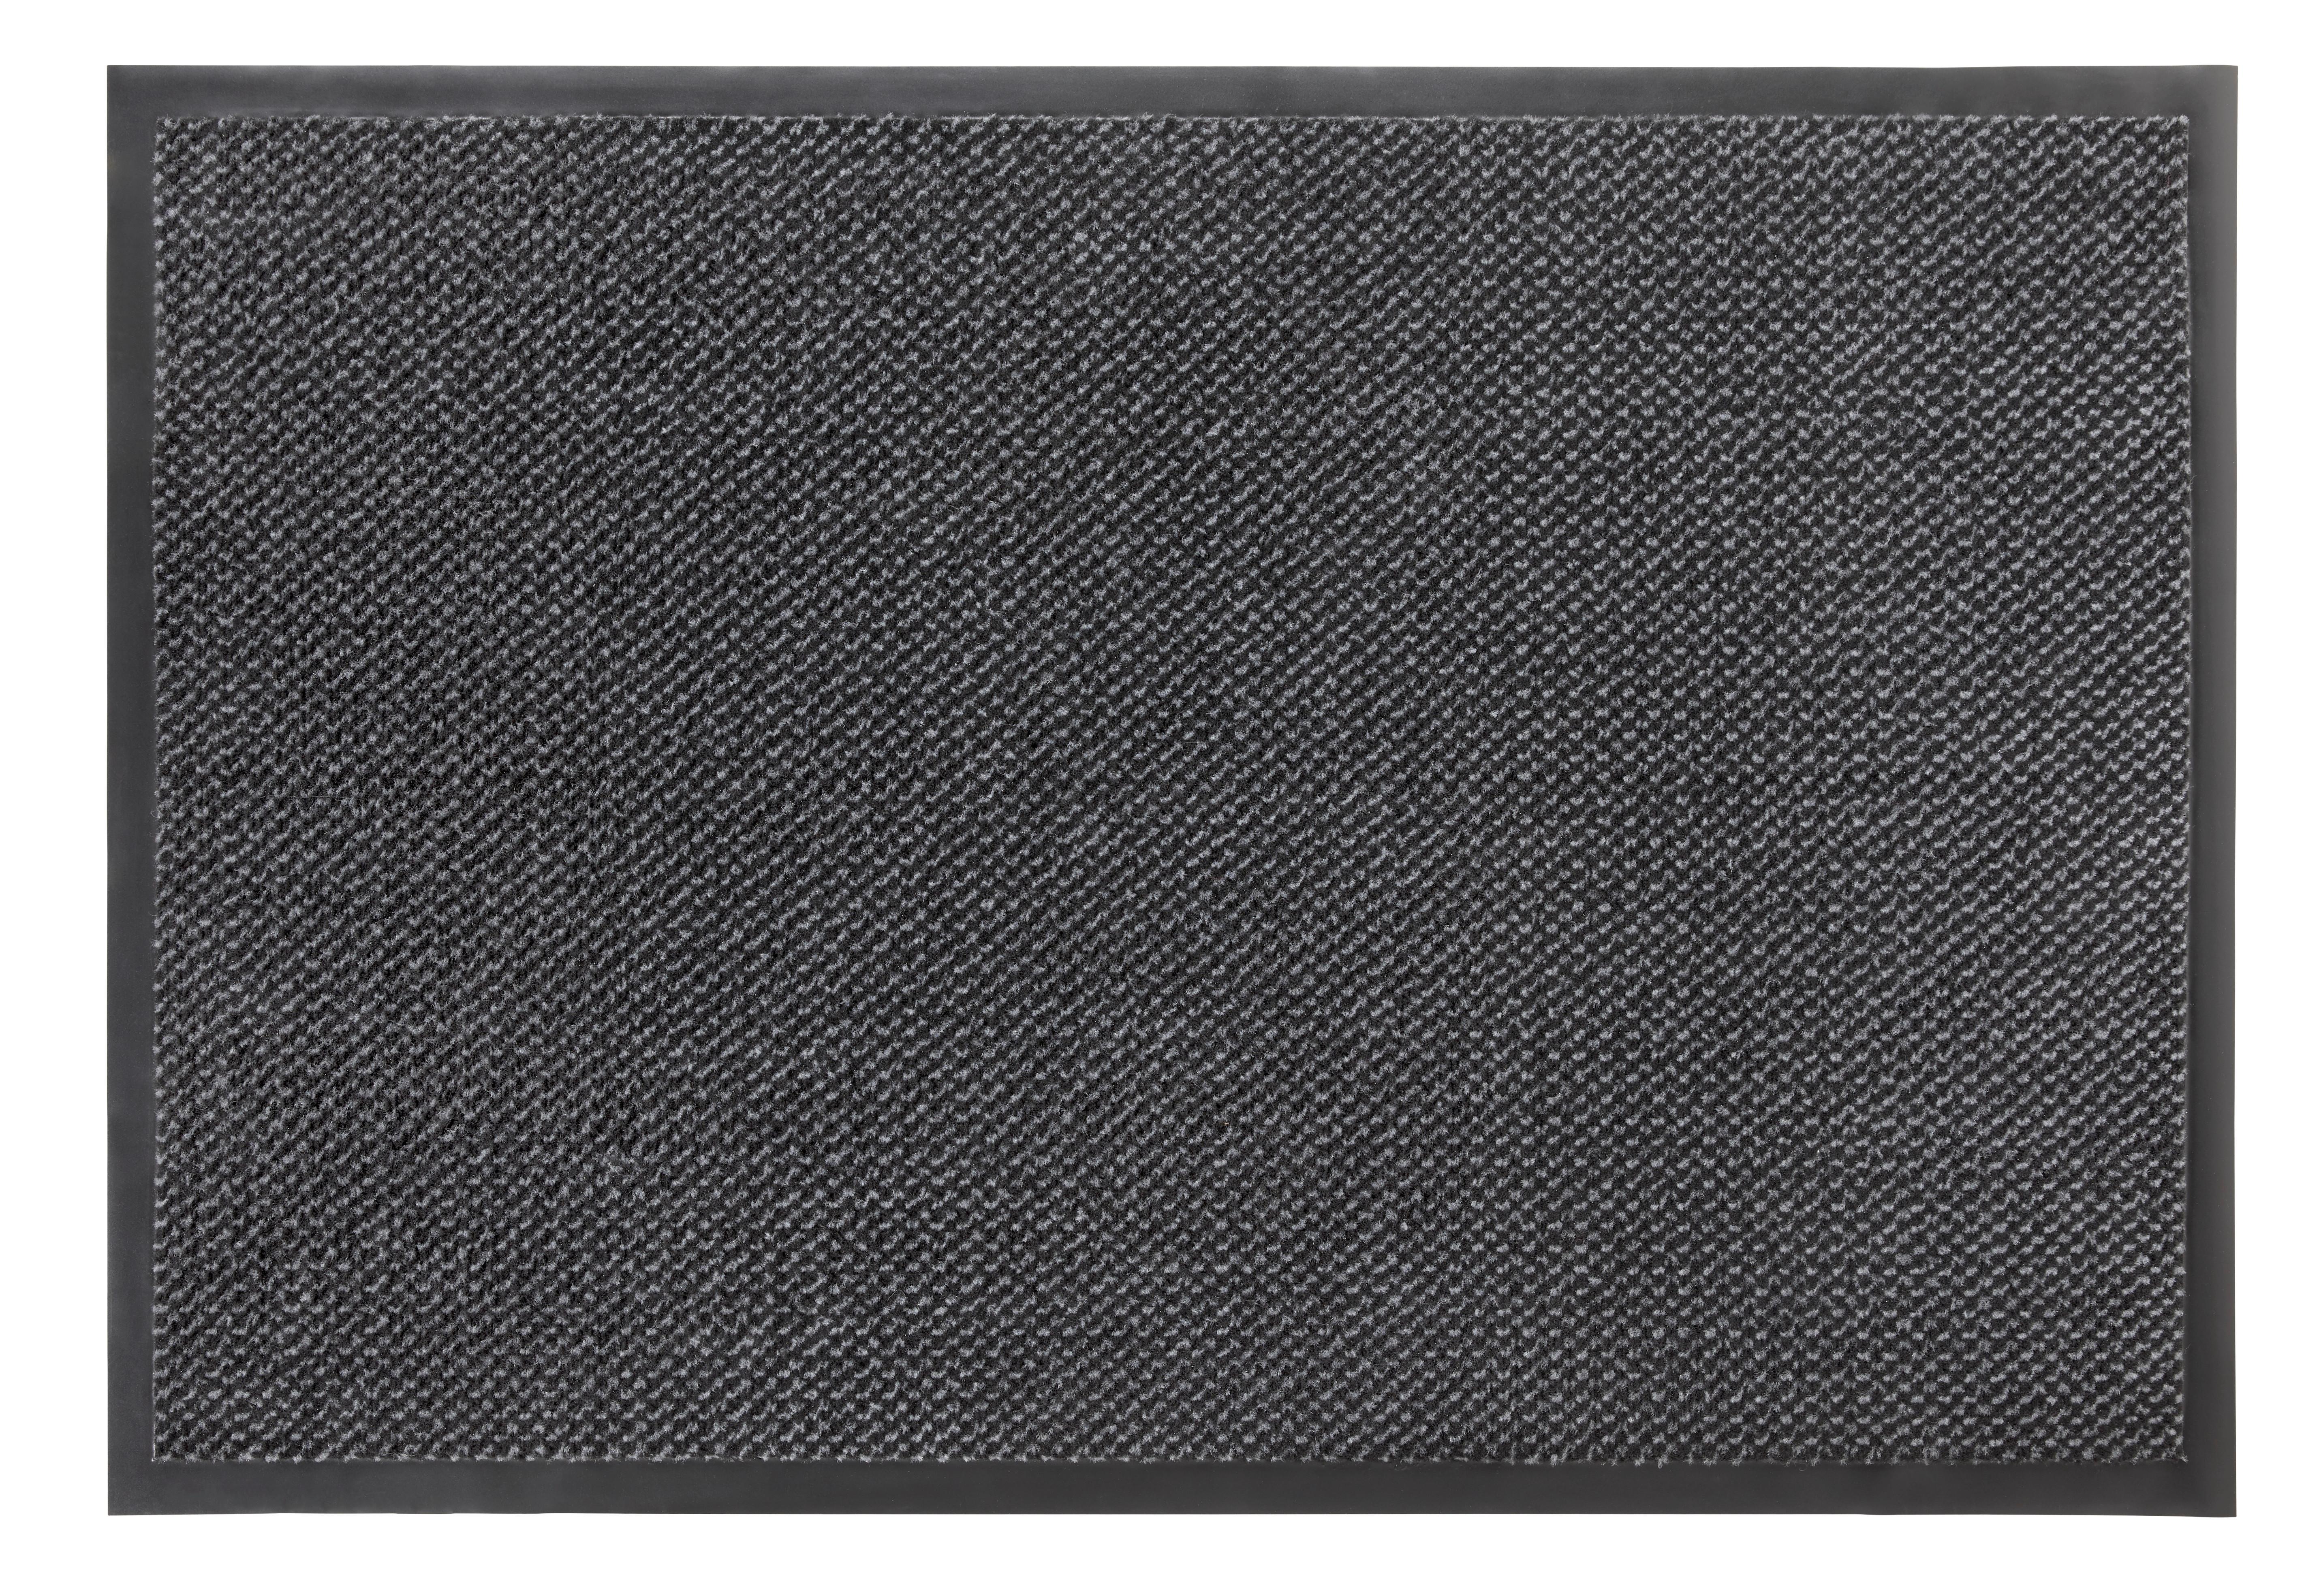 Lábtörlő Hamtpons3 80/120 - Szürke/Fekete, konvencionális, Textil (80/120cm) - Modern Living